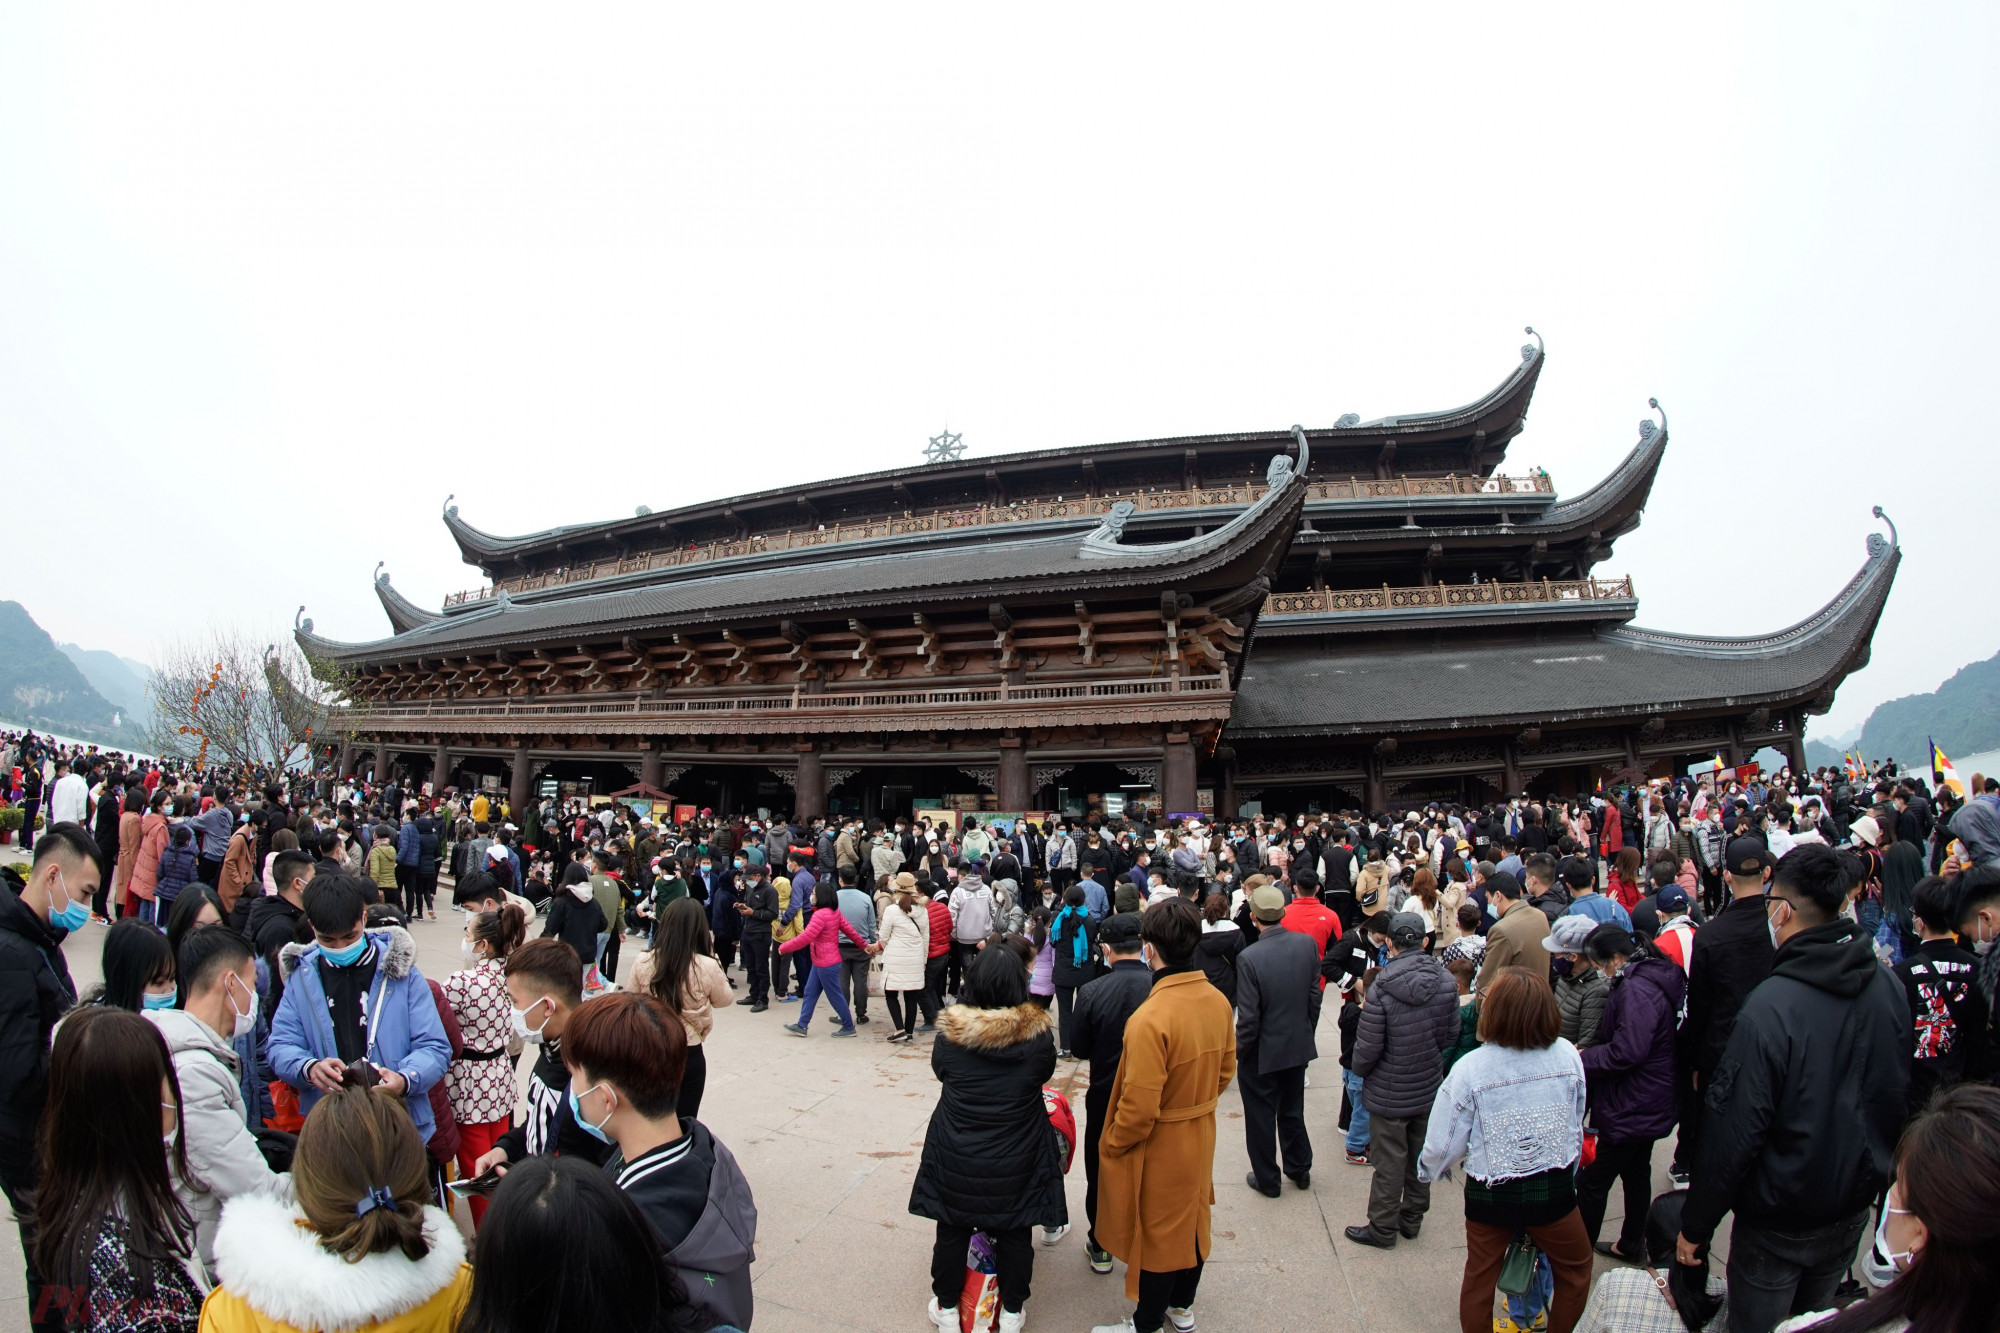 Theo ghi nhận của PV, ngày 5/2 (tức mồng 5 Tết), hàng nghìn du khách từ khắp nơi đã đổ về khu du lịch chùa Tam Chúc, huyện Kim Bảng, tỉnh Hà Nam, để chiêm bái, tham quan, du lịch... 